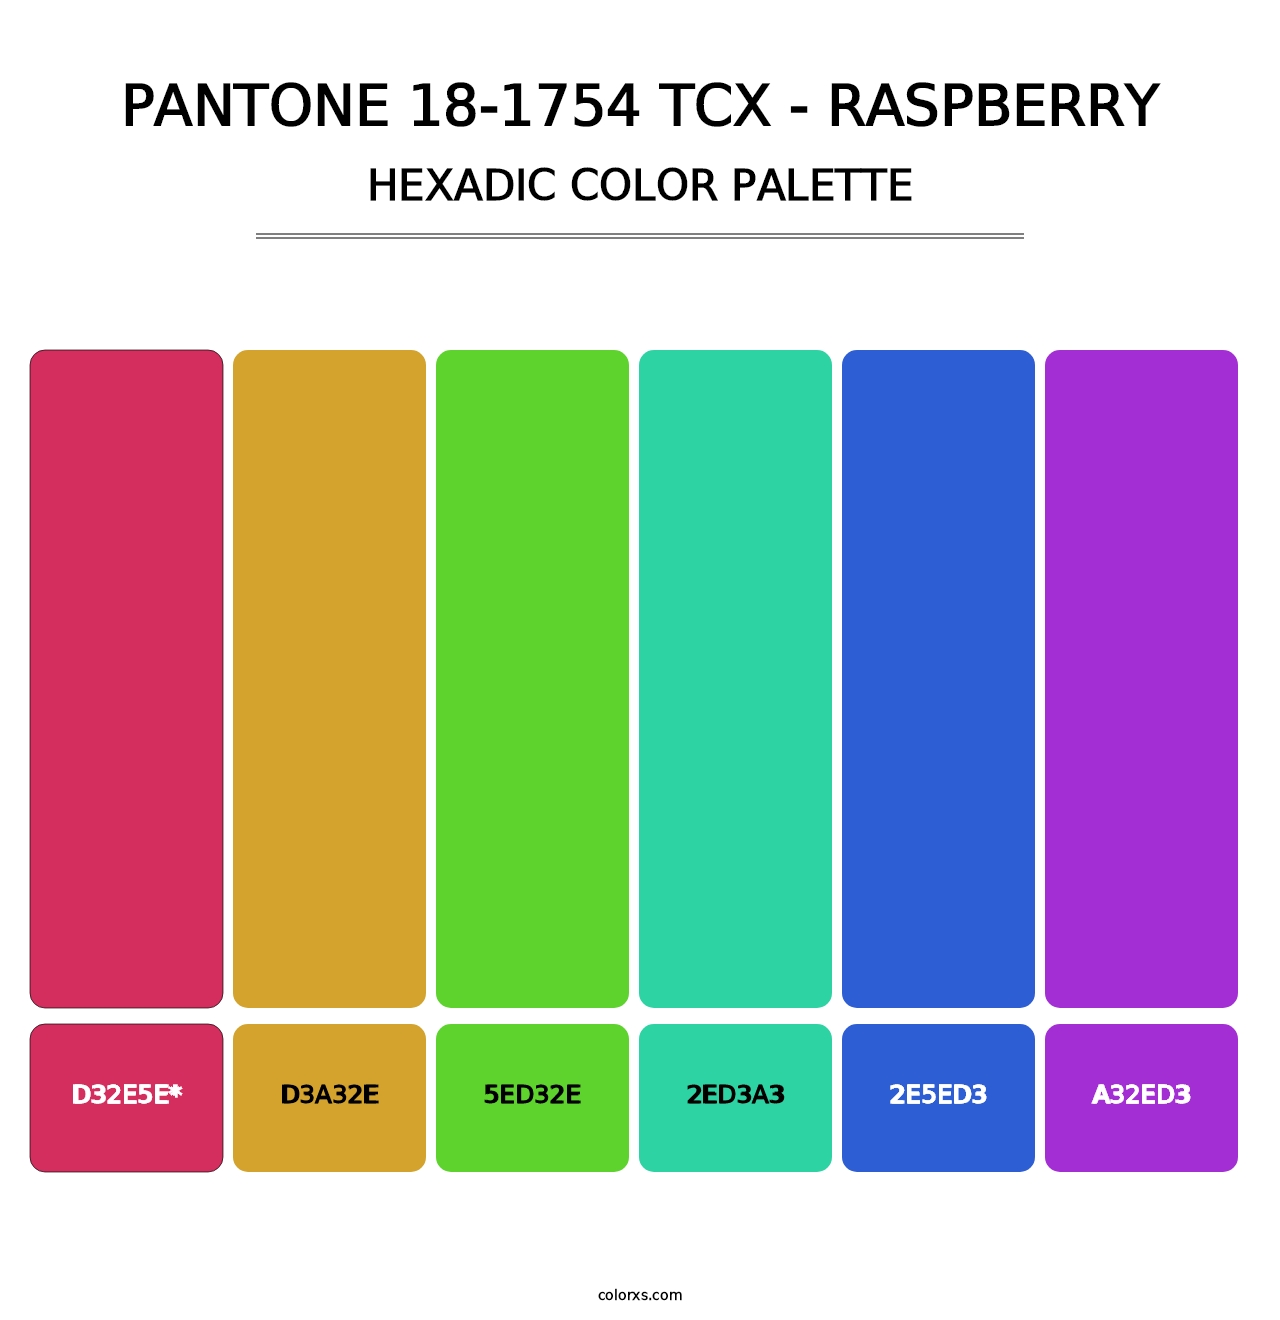 PANTONE 18-1754 TCX - Raspberry - Hexadic Color Palette